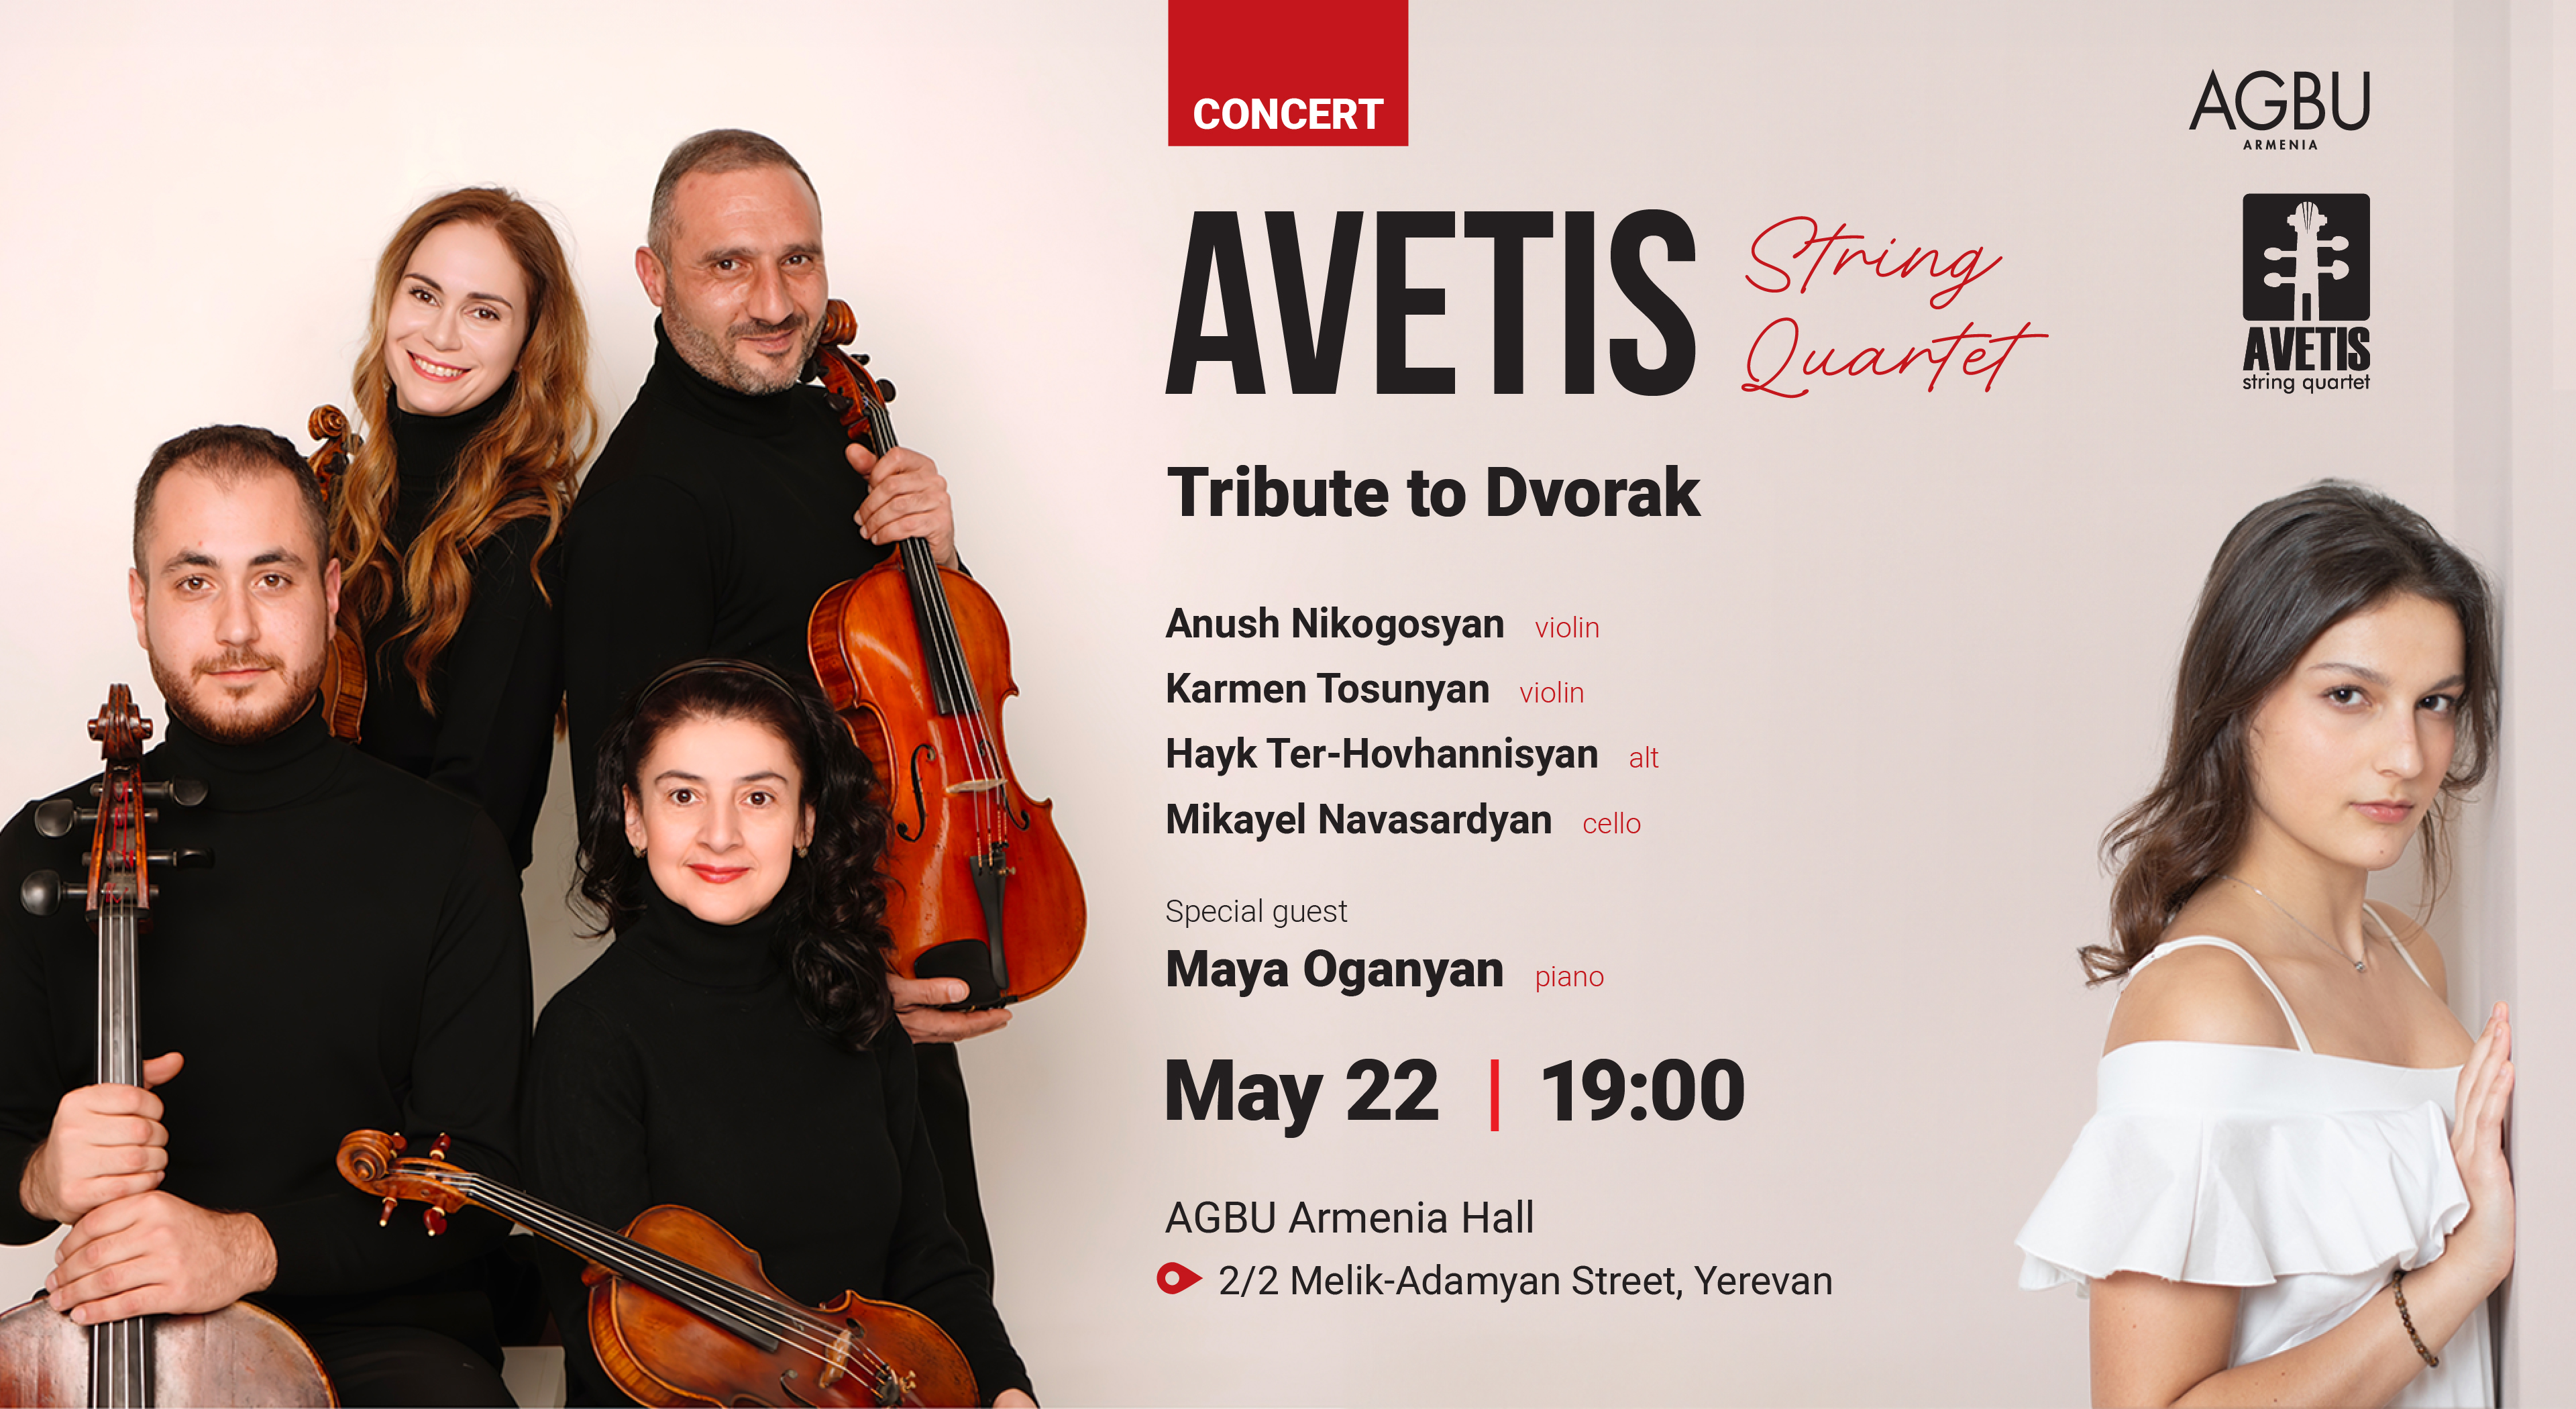 Tribute to Dvorak by AVETIS String Quartet 